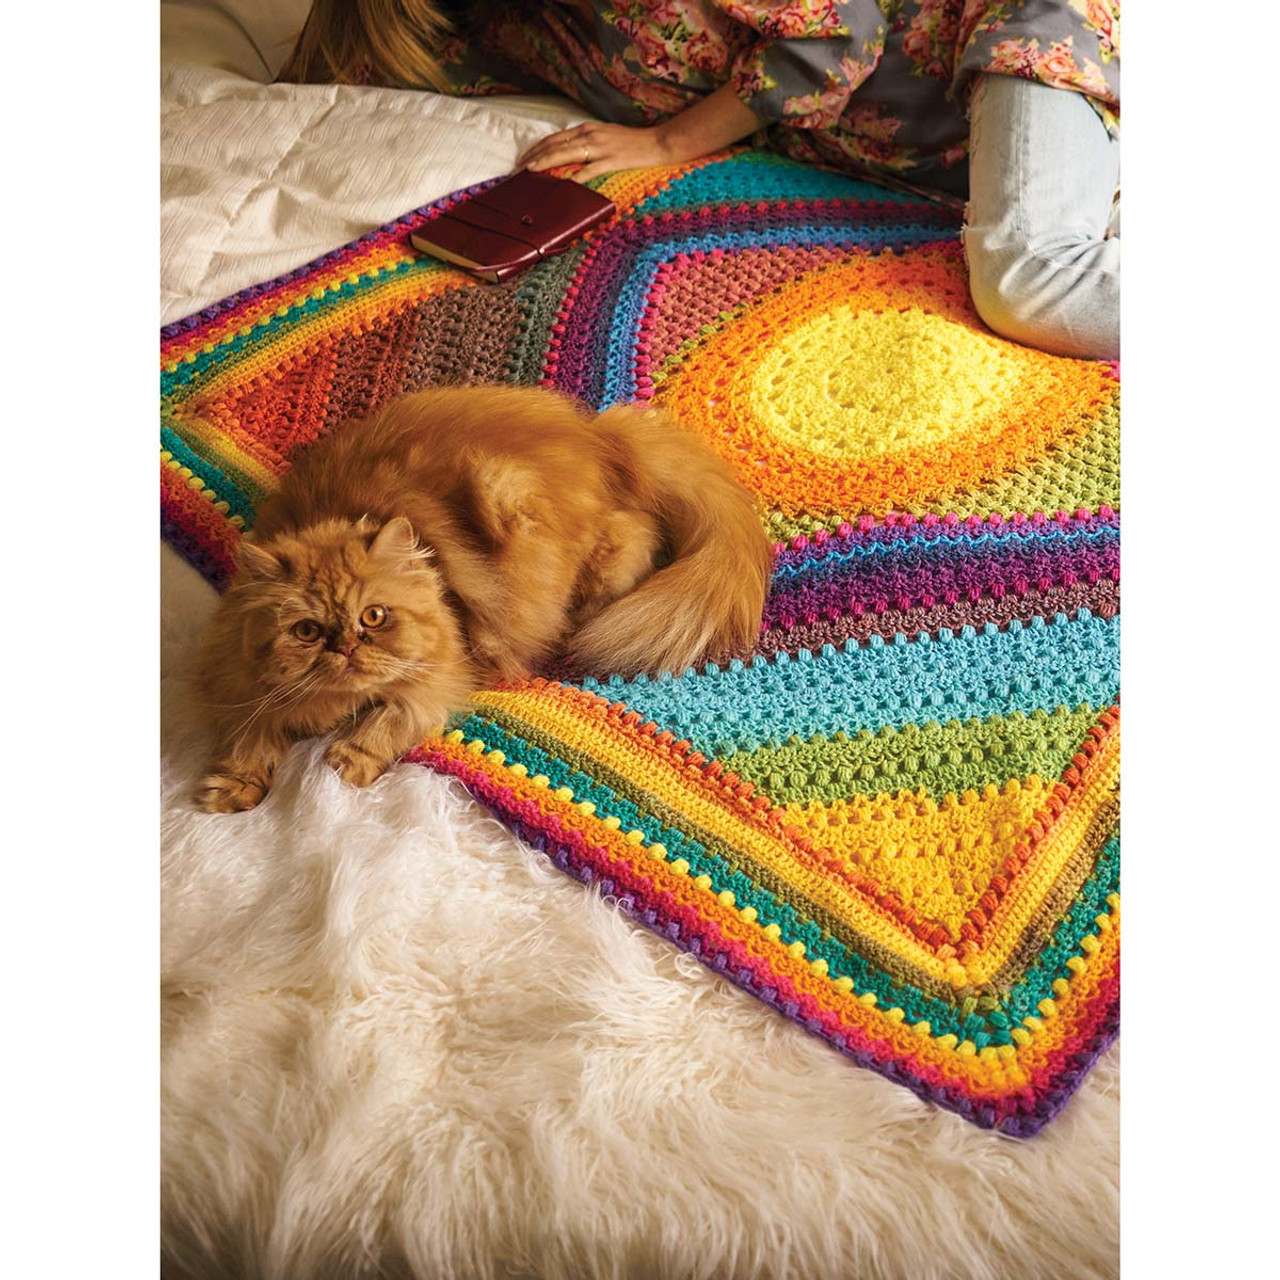 Blanket using Lion's brand mandala yarn. 1st blanket. Was for me